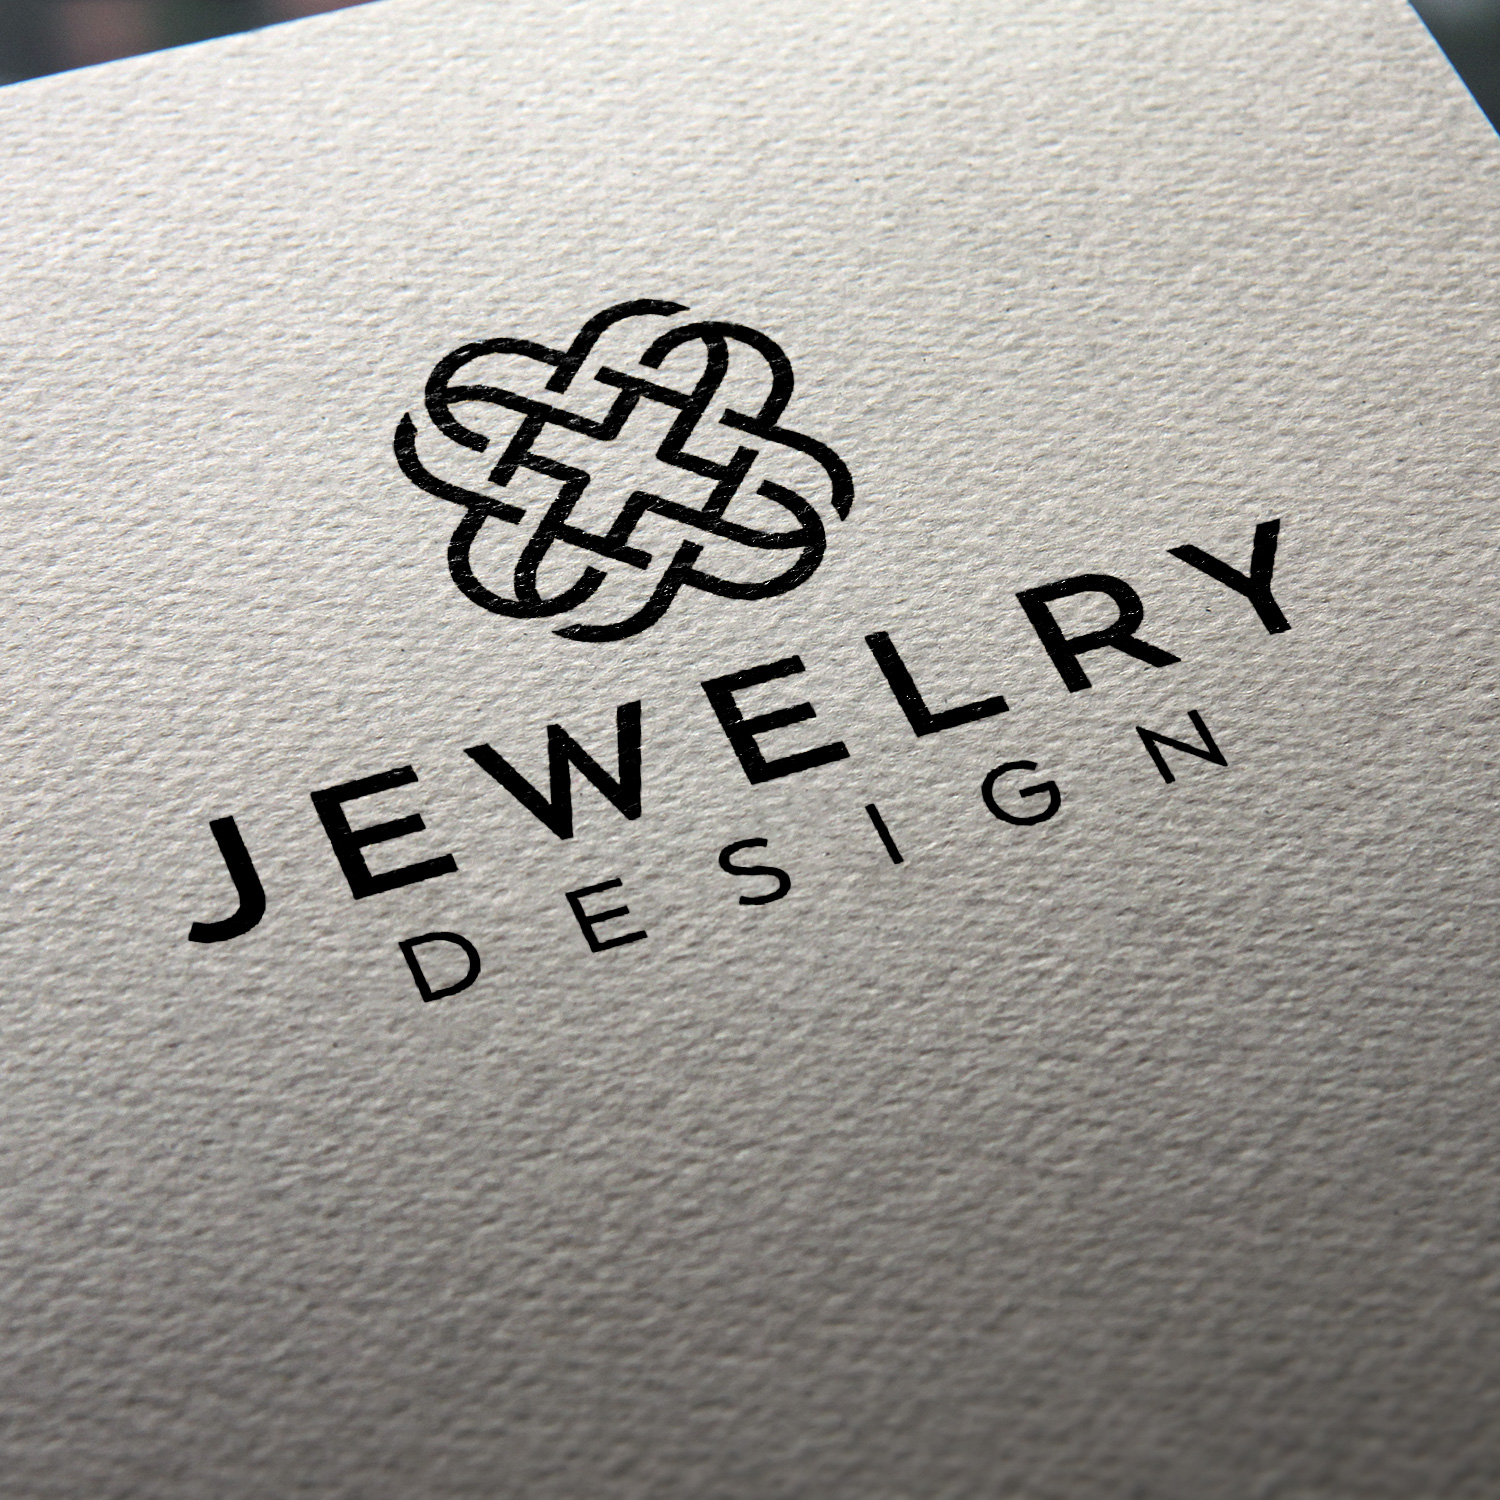 jewelry logo ideas 1